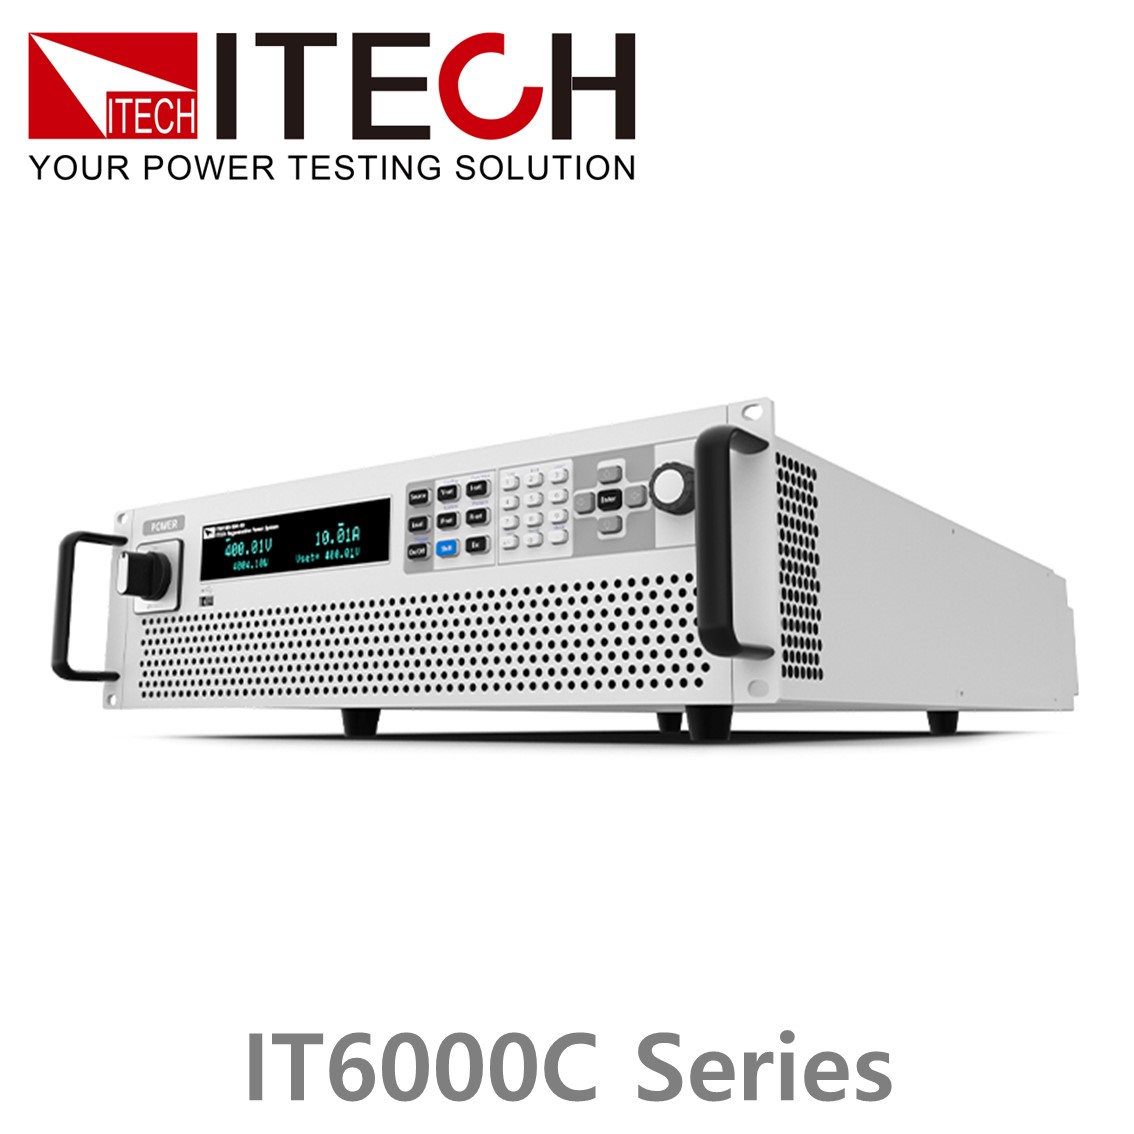 [ ITECH ] IT6000C시리즈 양방향 프로그래머블 DC전원공급기 (5~144kW...2MW)